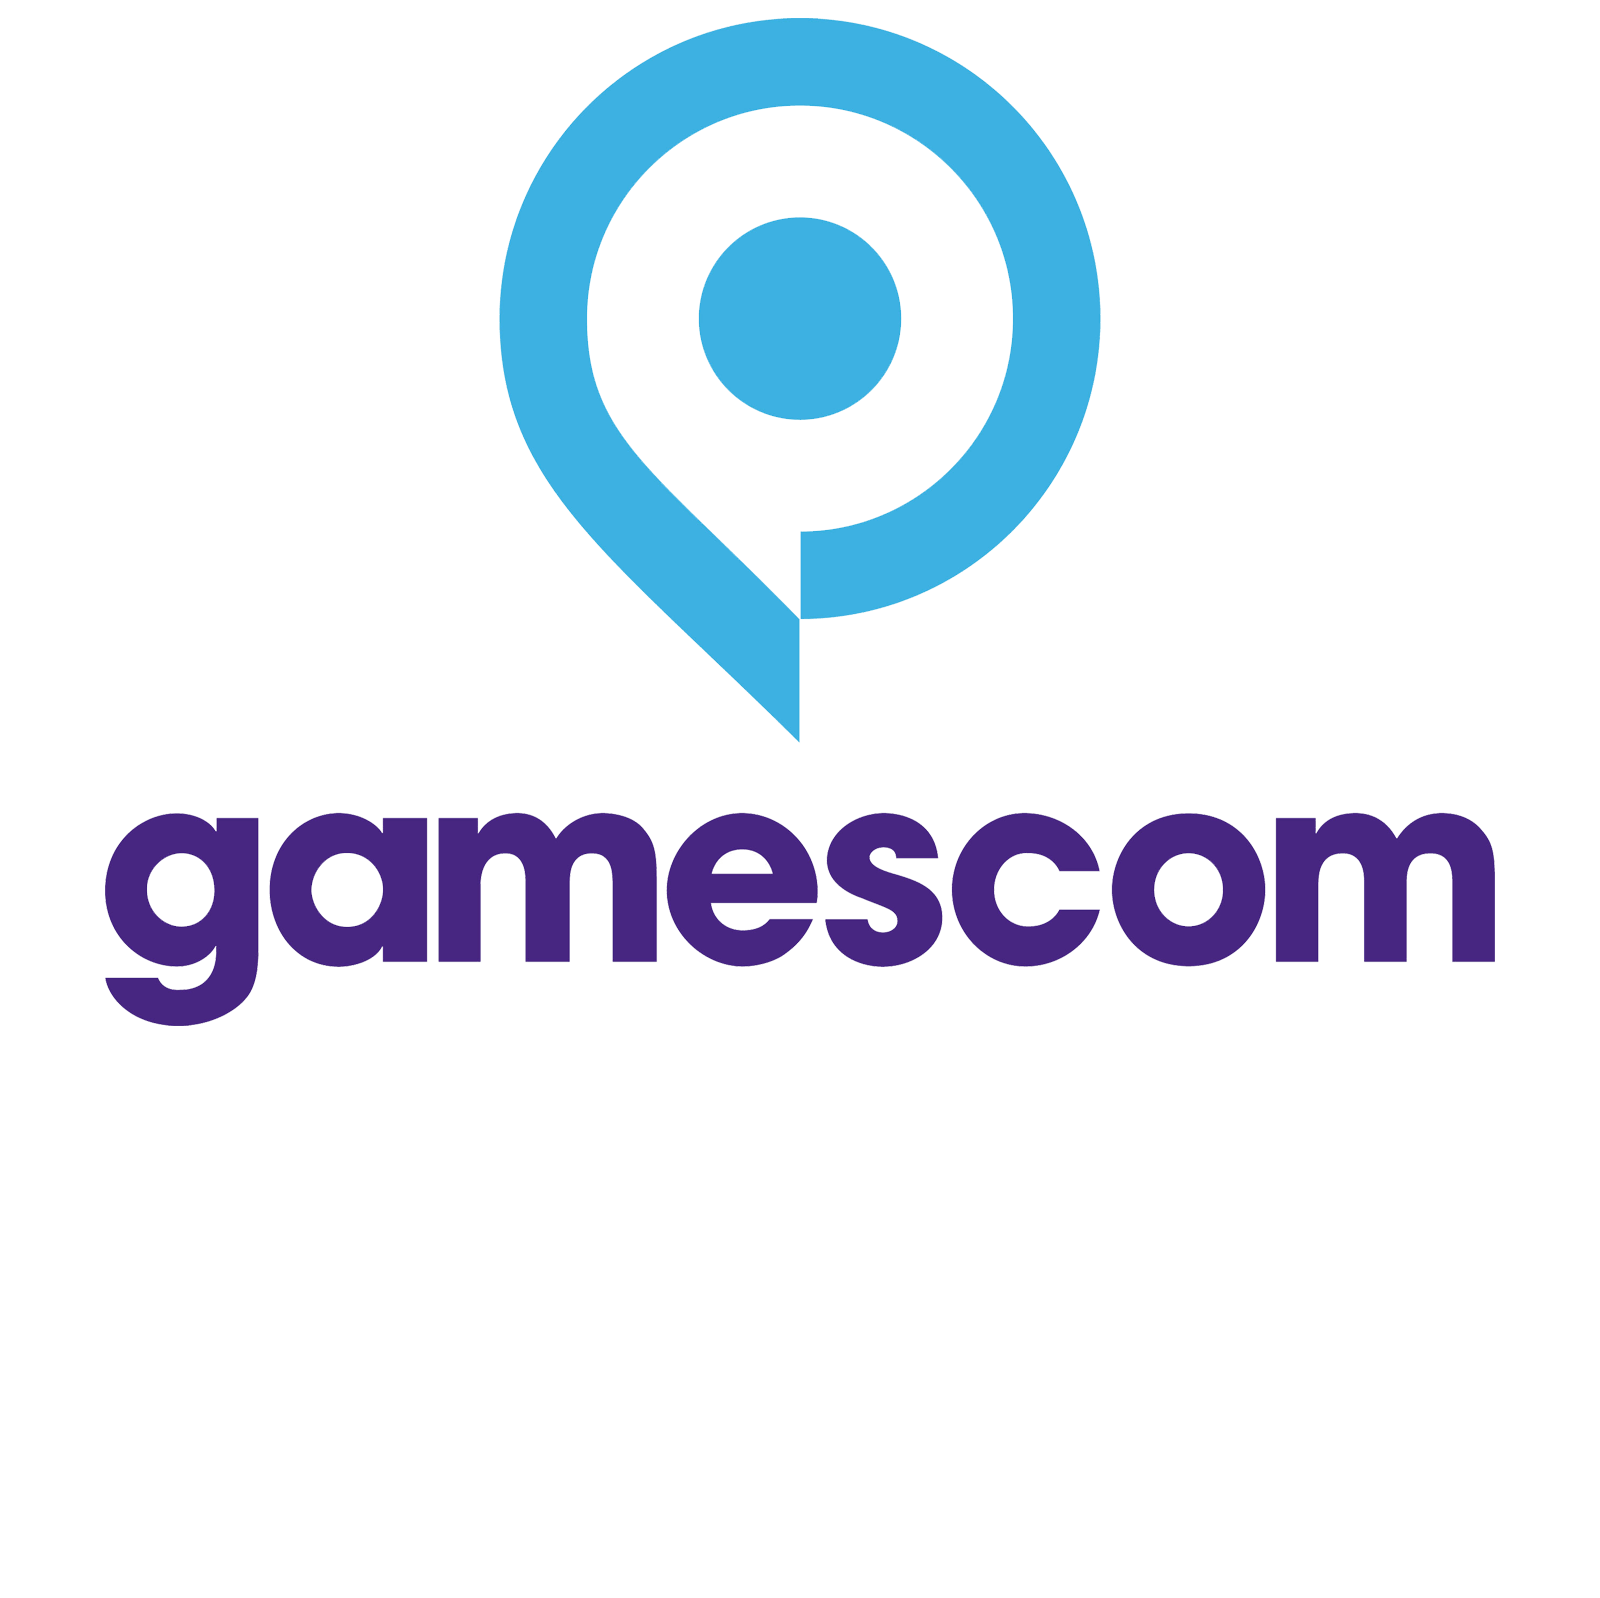 Gamescom Logo - Gamescom | Windows Central